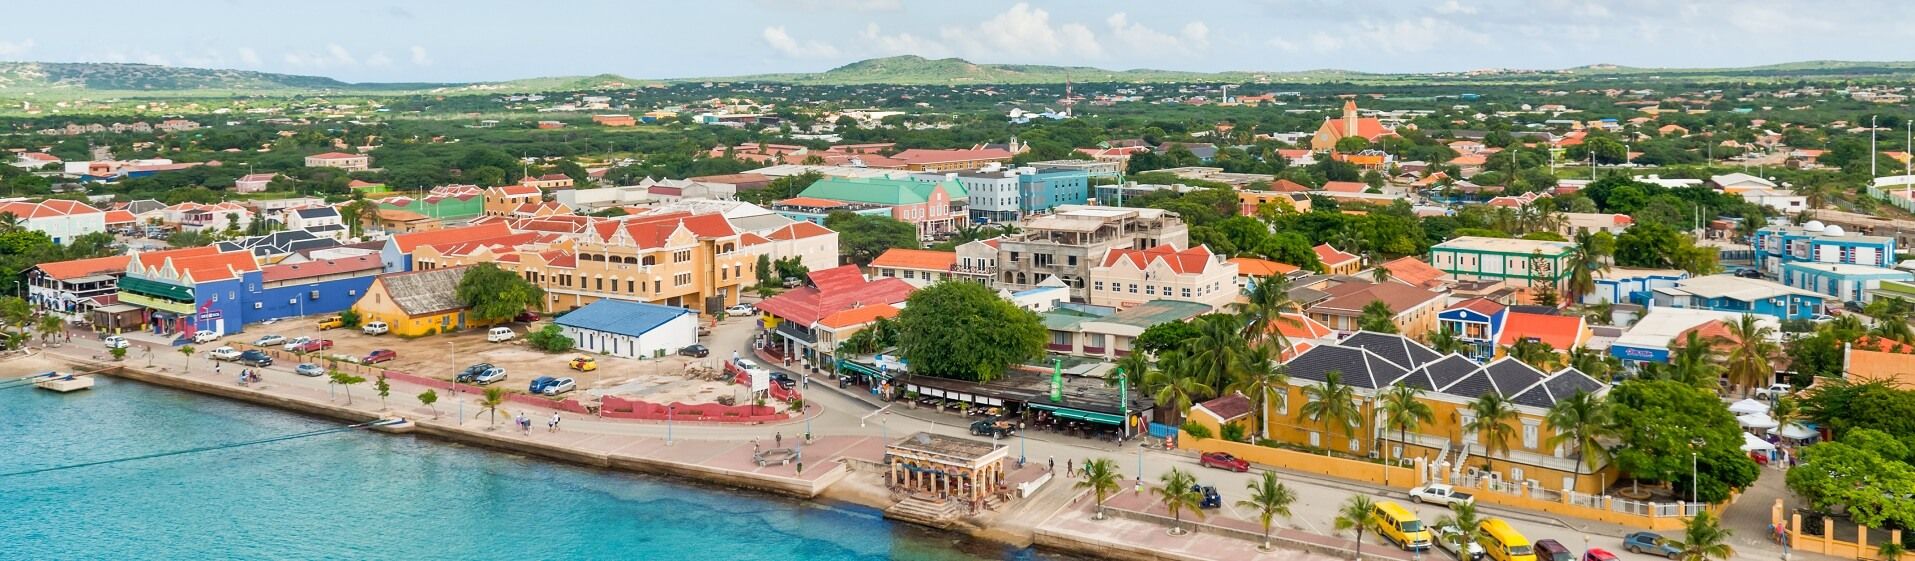 Urlaub und Ferien auf Bonaire